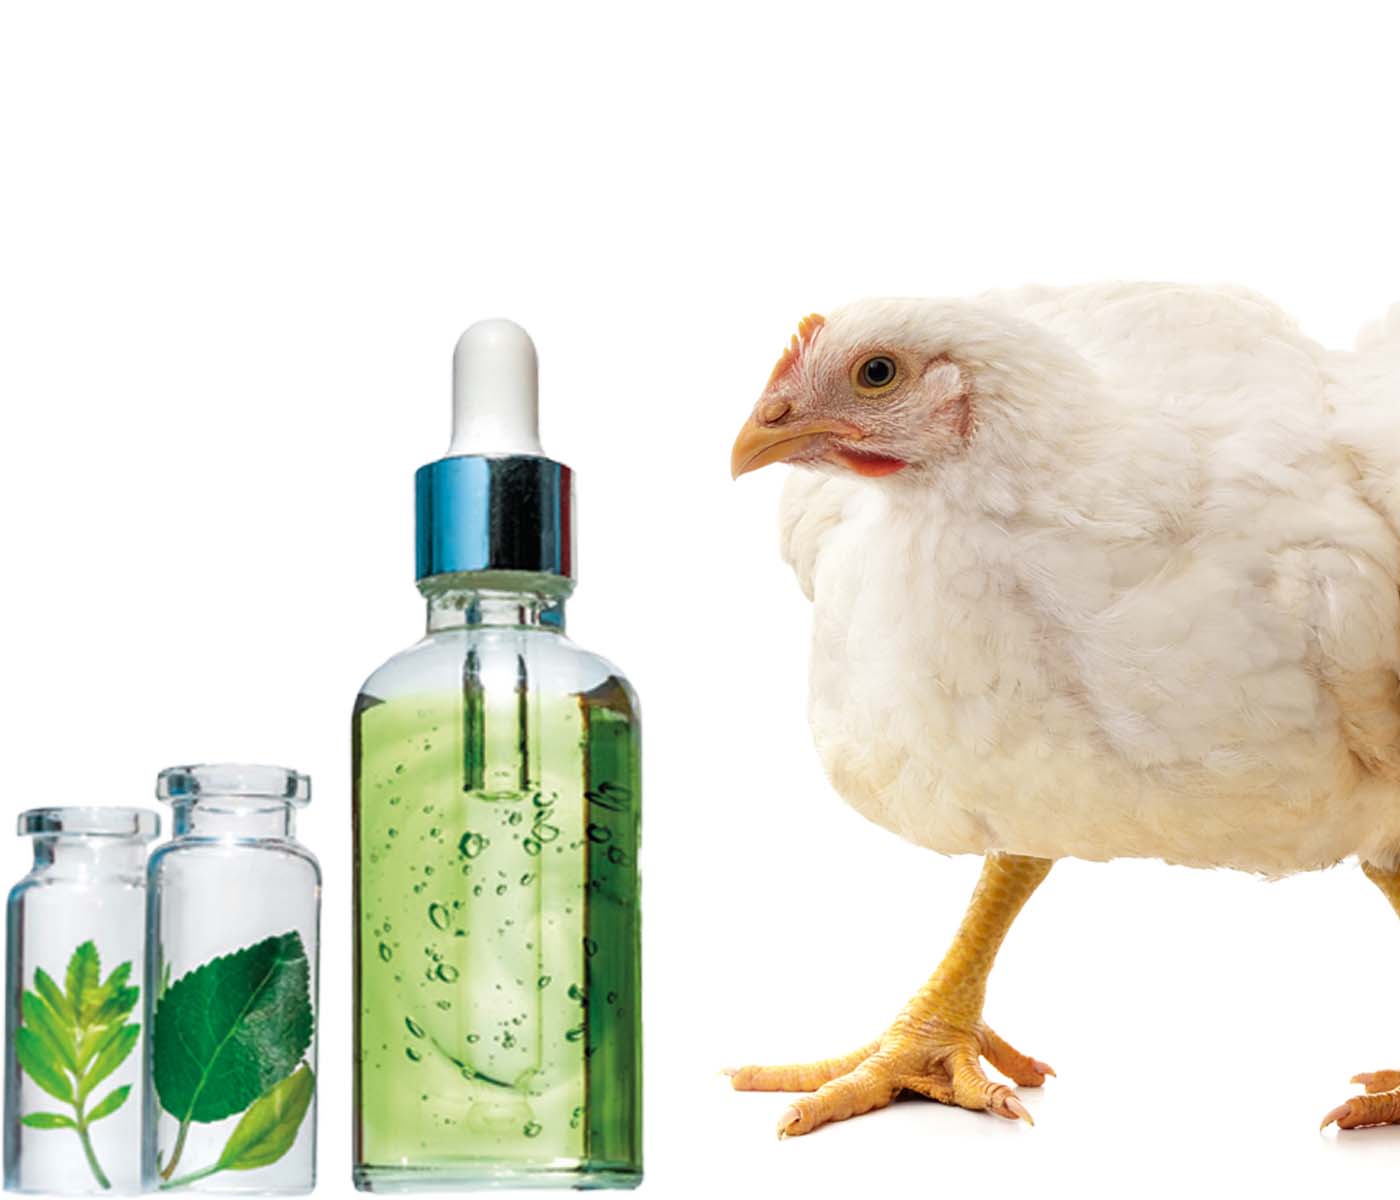 Interés de sustancias aromáticas en pollos de engorde alimentados sin anticoccidios o vacunados contra la coccidiosis